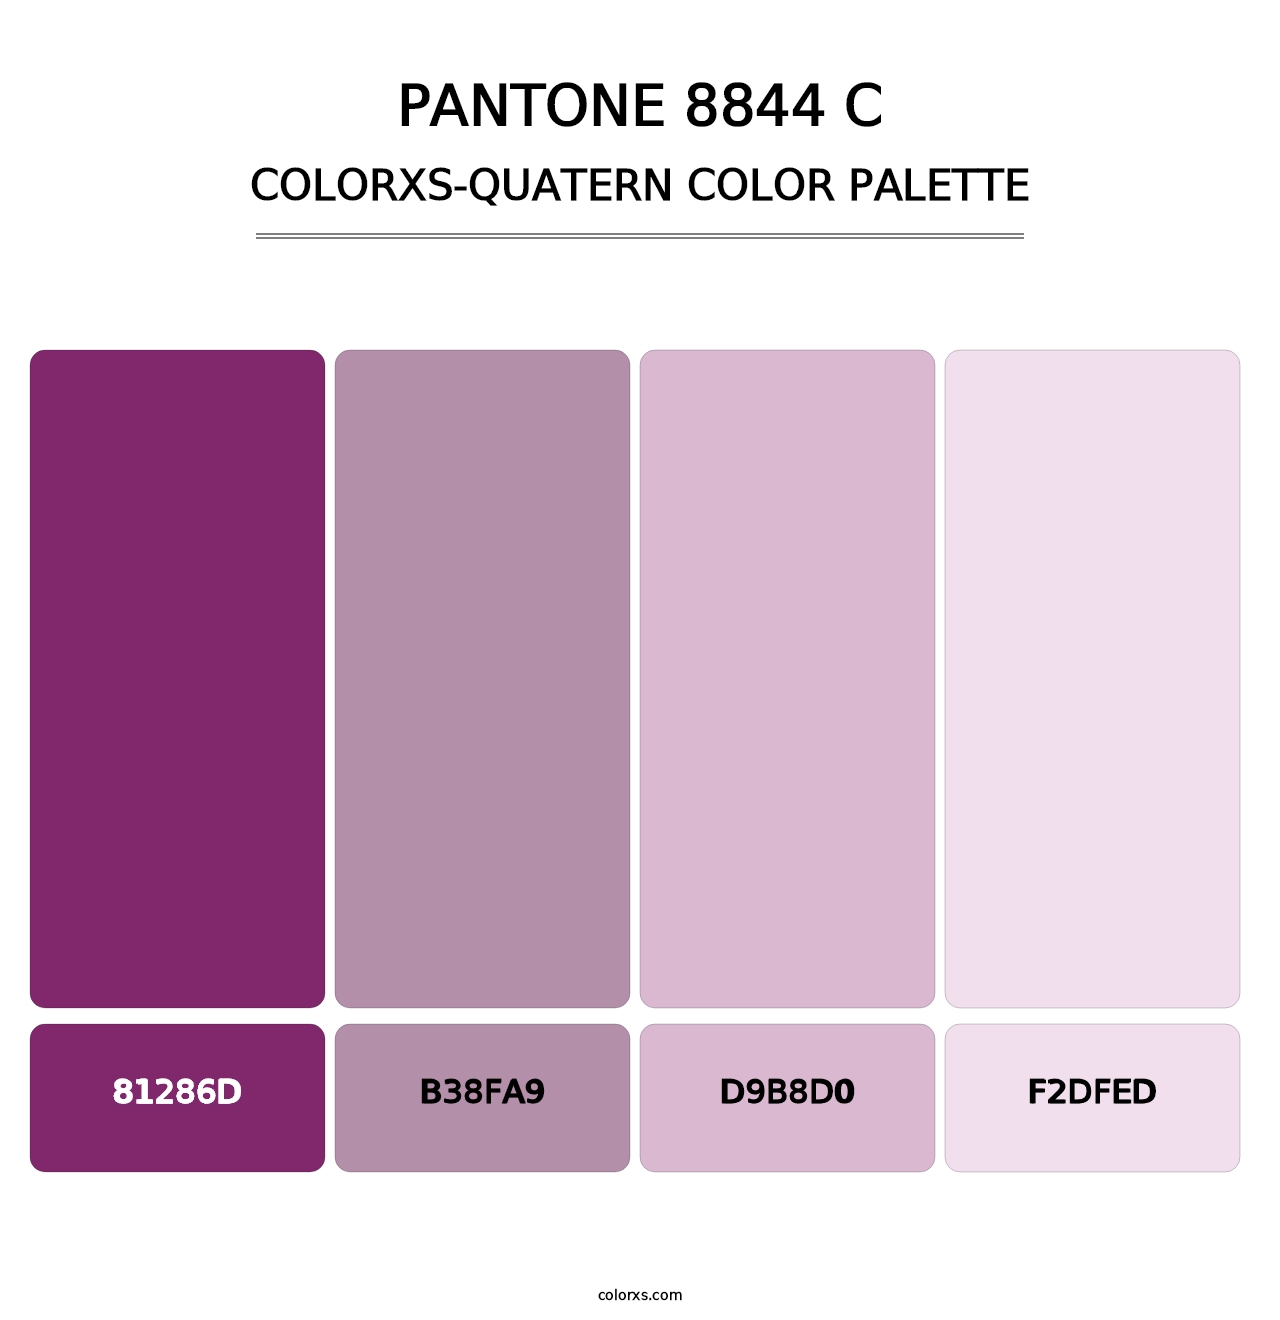 PANTONE 8844 C - Colorxs Quatern Palette